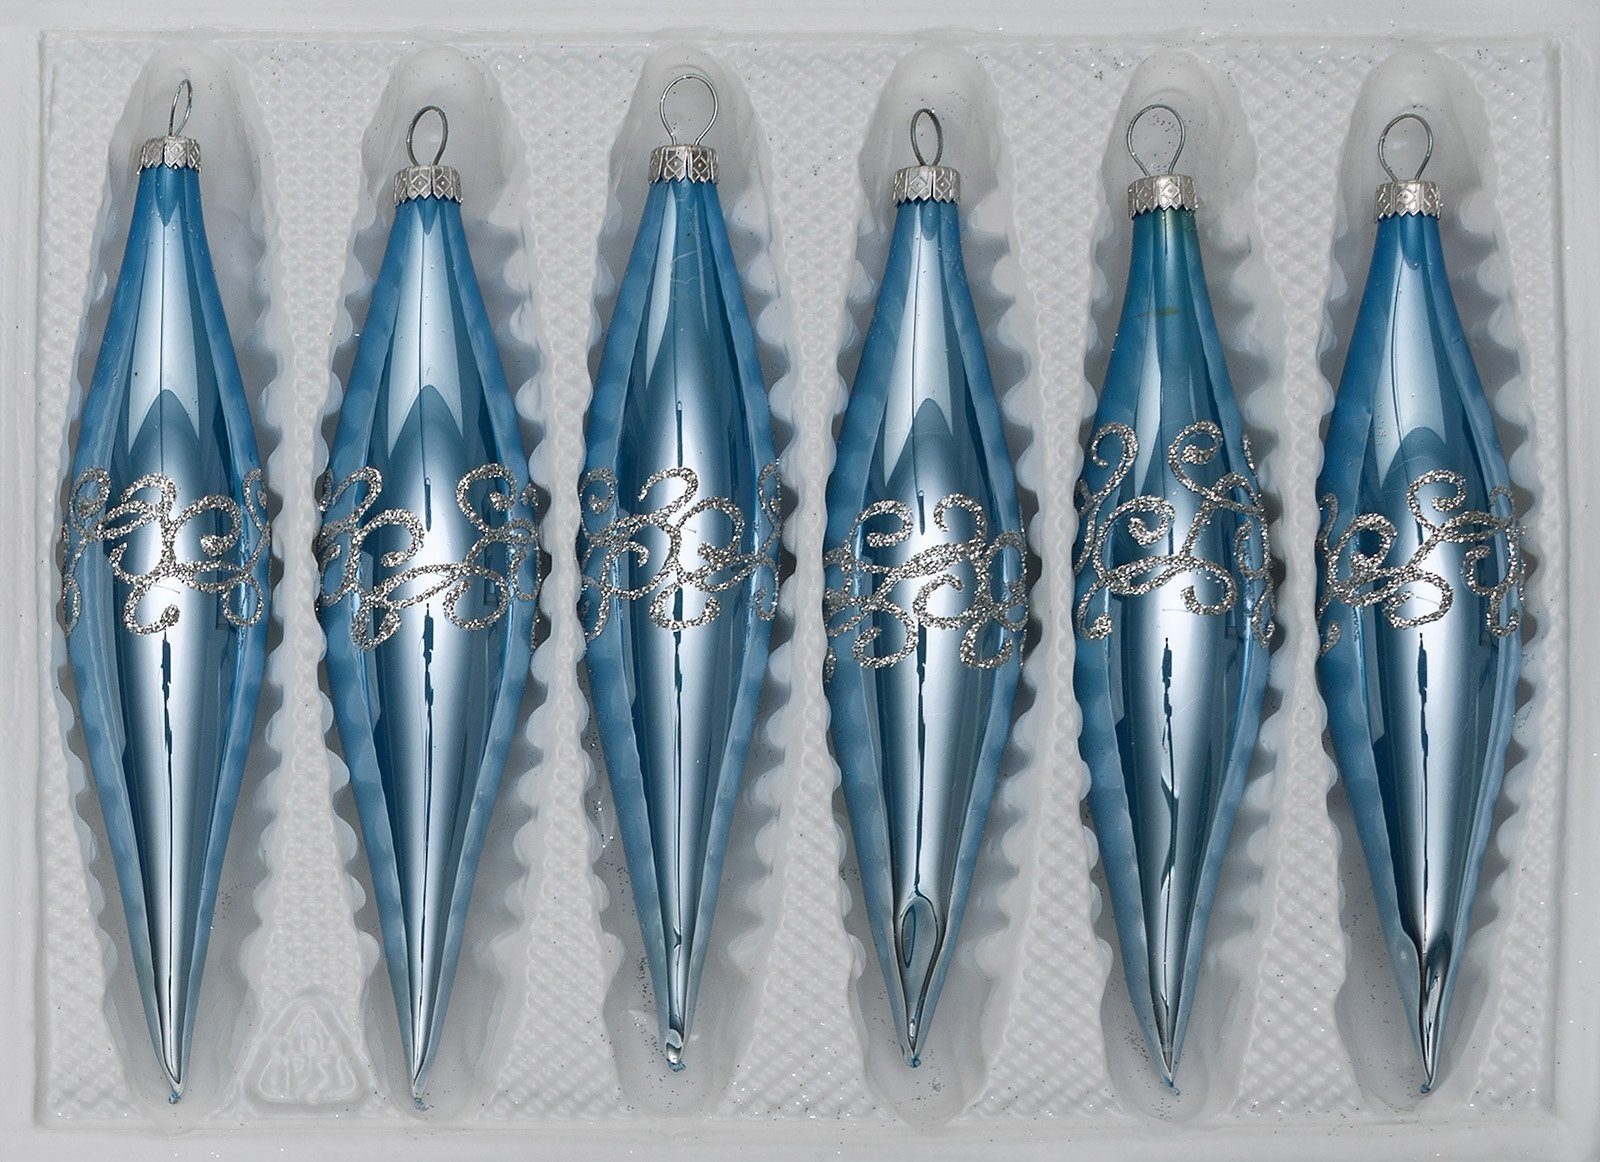 Navidacio Christbaumschmuck 6 tlg. Glas-Zapfen Set in "Hochglanz-Blau-Silberne-Ornamente“